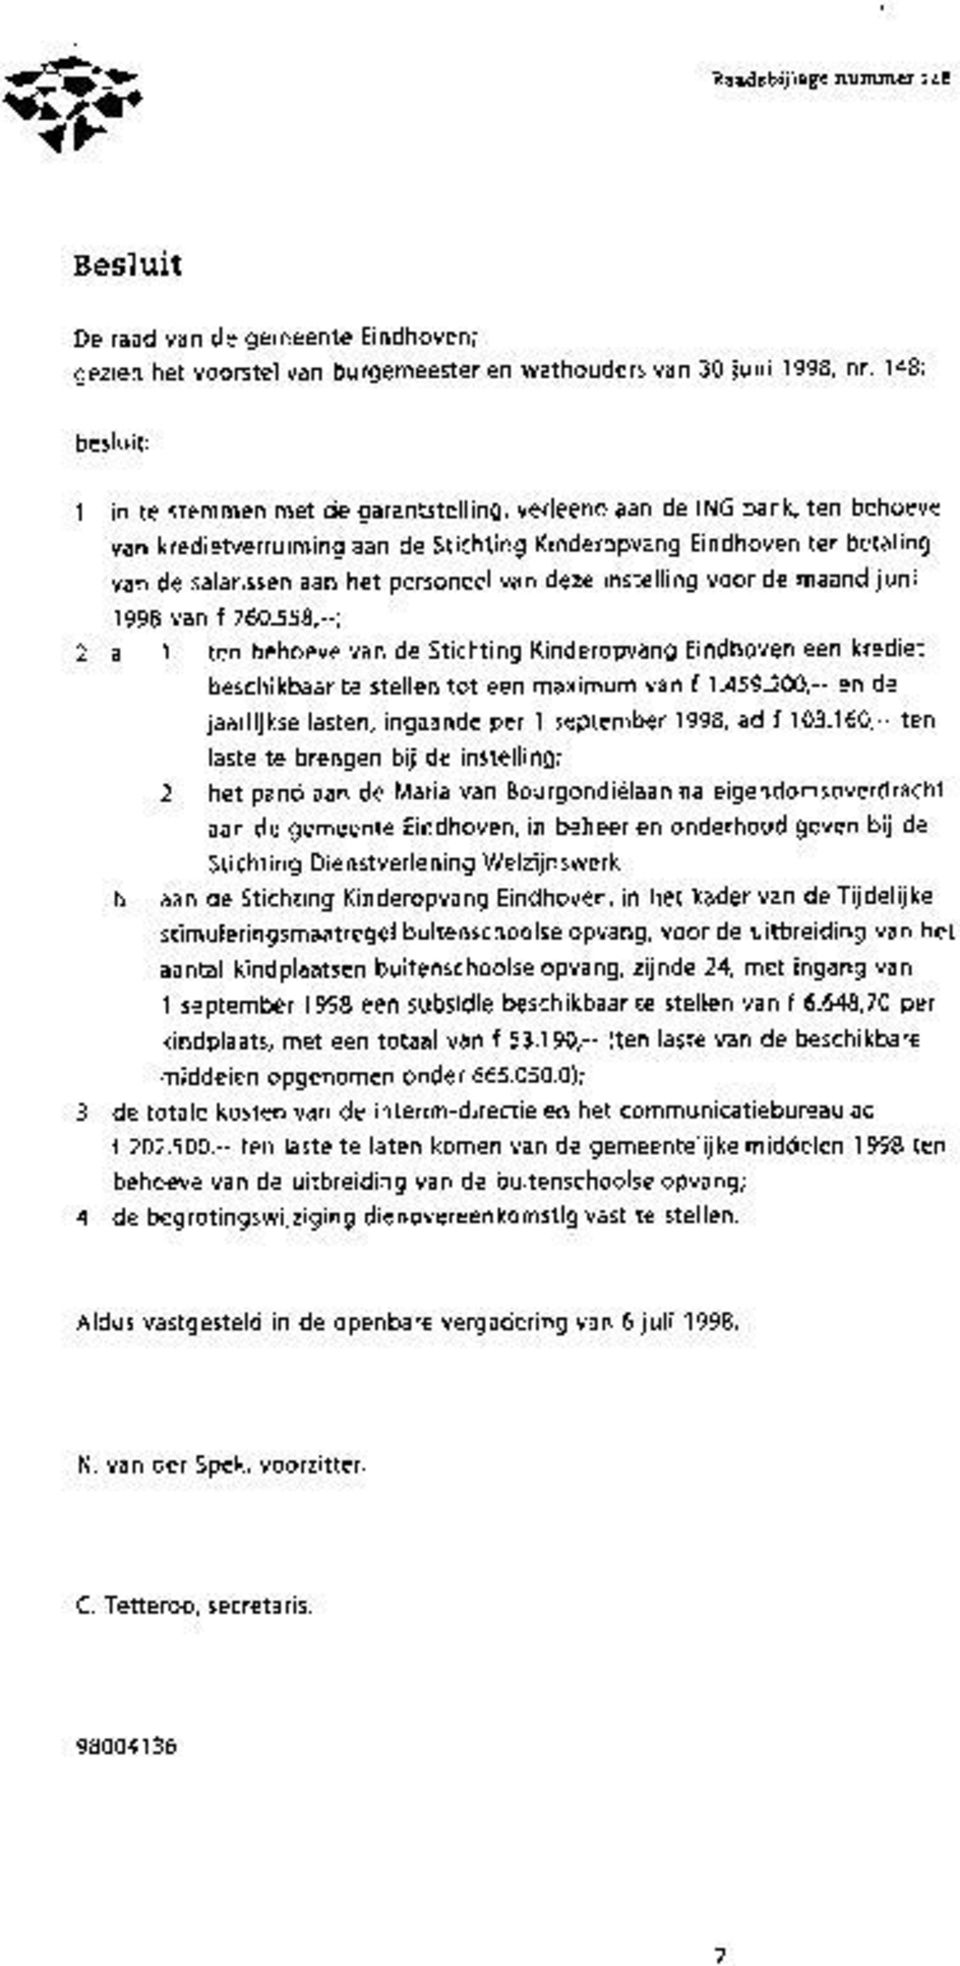 personeel van deze instelling voor de maand juni 1998 van f 760.558,ÃćâĆňâĂİ ; 2 a 1 ten behoeve van de Stichting Kinderopvang Eindhoven een krediet beschikbaar te stellen tot een maximum van f 1.459.